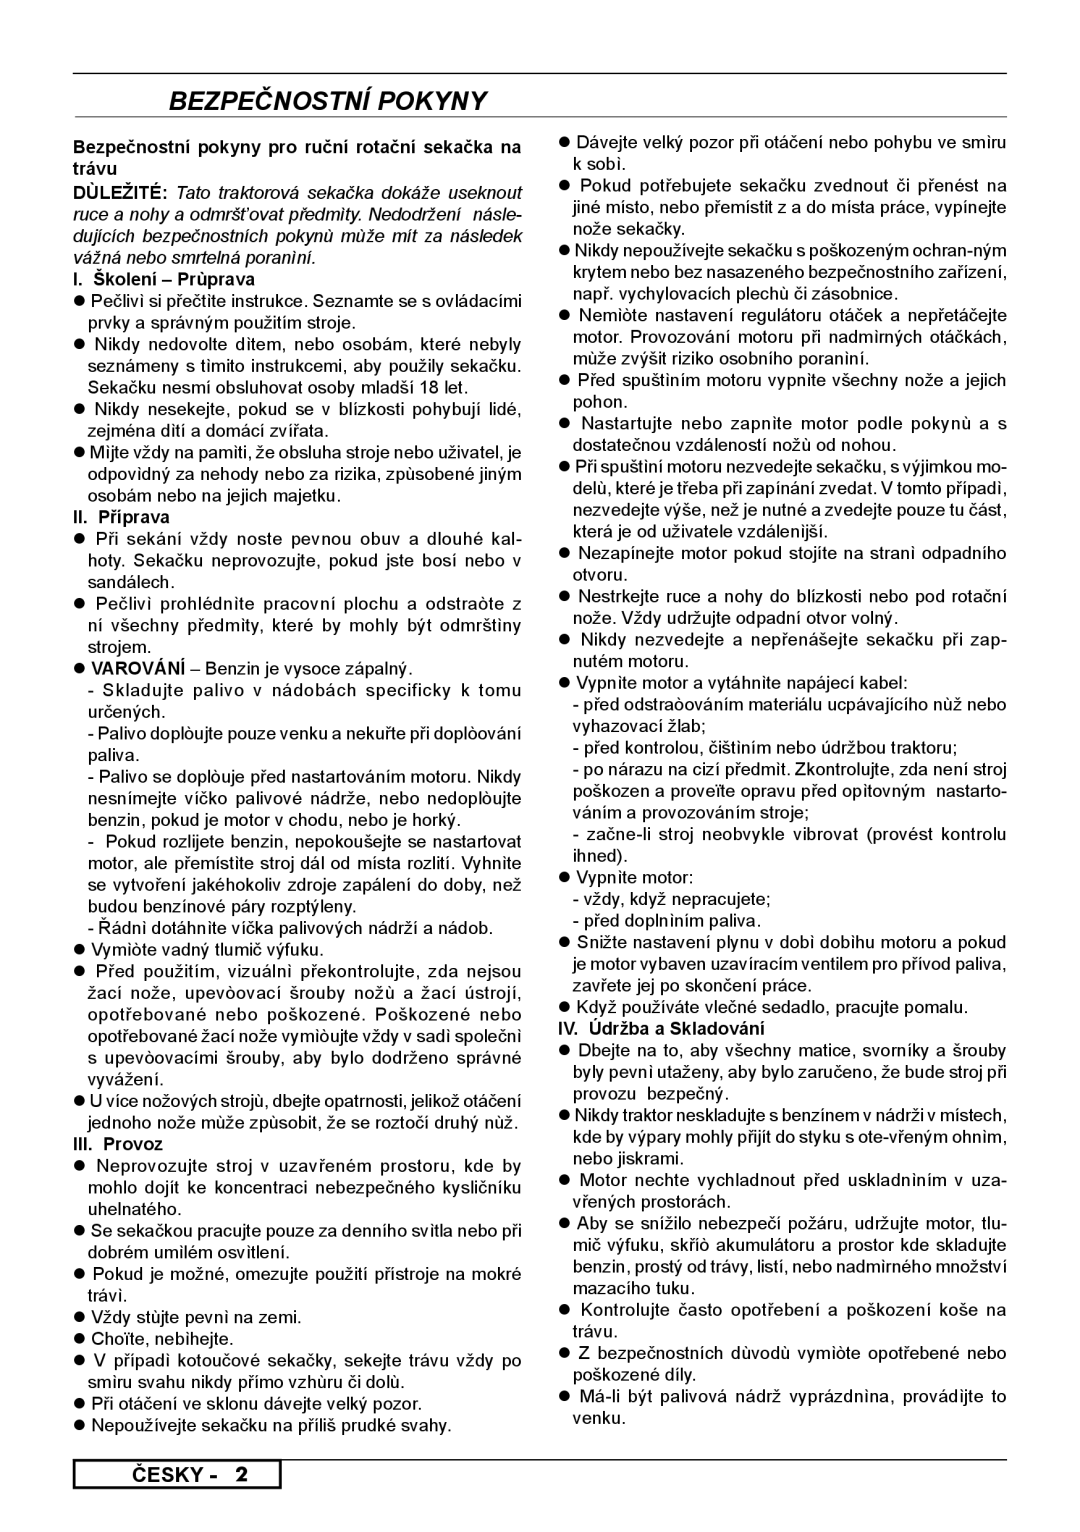 Husqvarna 962000107 Bezpečnostní Pokyny, Česky, Bezpečnostní pokyny pro ruční rotační sekačka na trávu, II. Příprava 